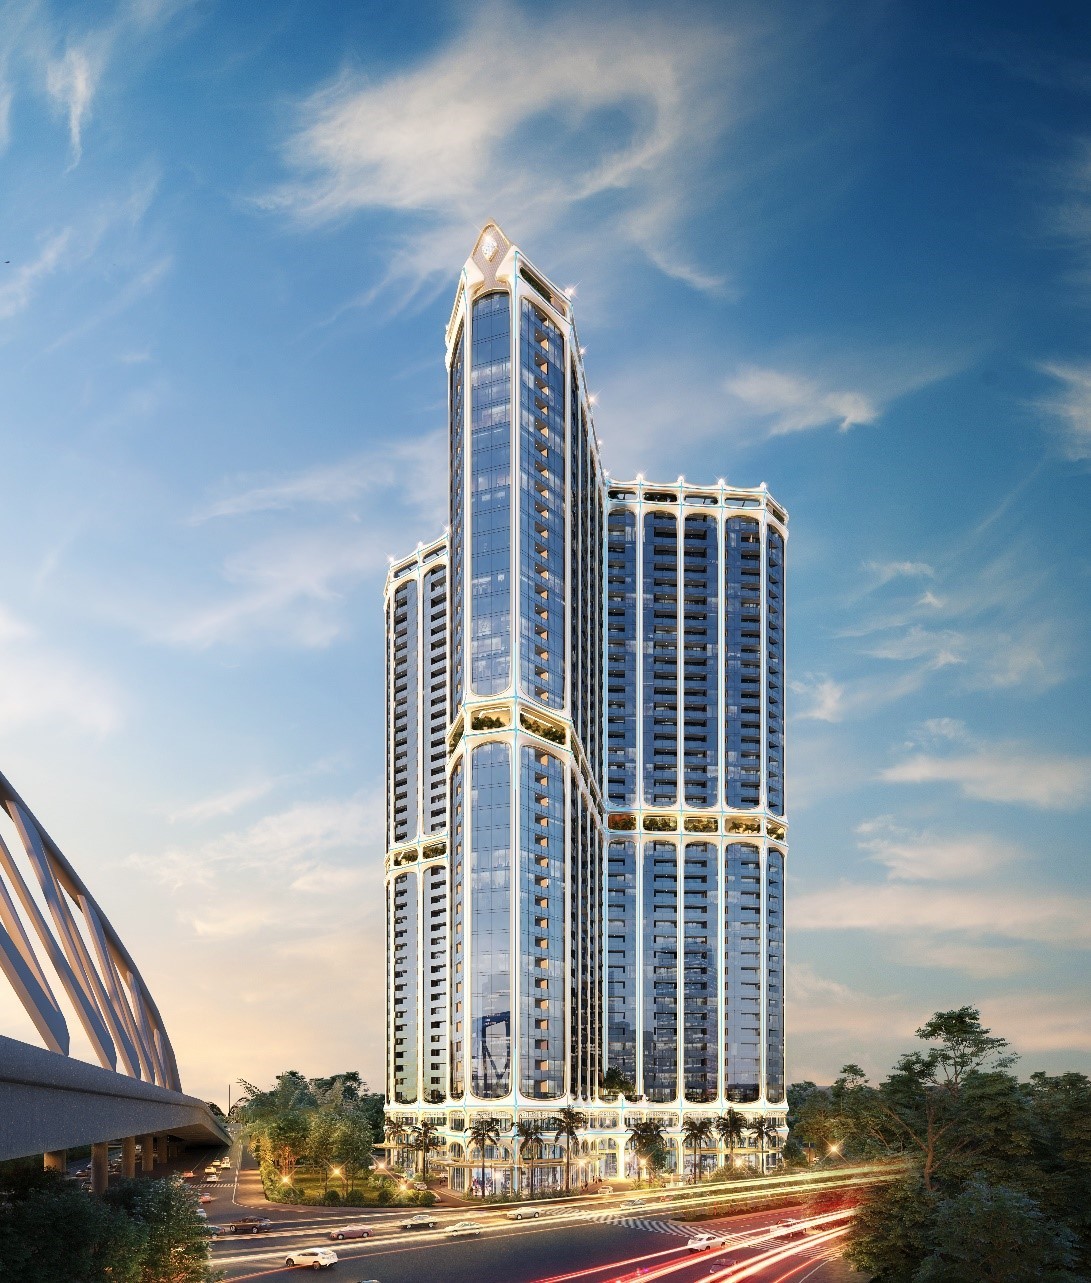 DOJILAND được vinh danh là nhà phát triển bất động sản hạng sang tốt nhất Việt Nam năm 2023